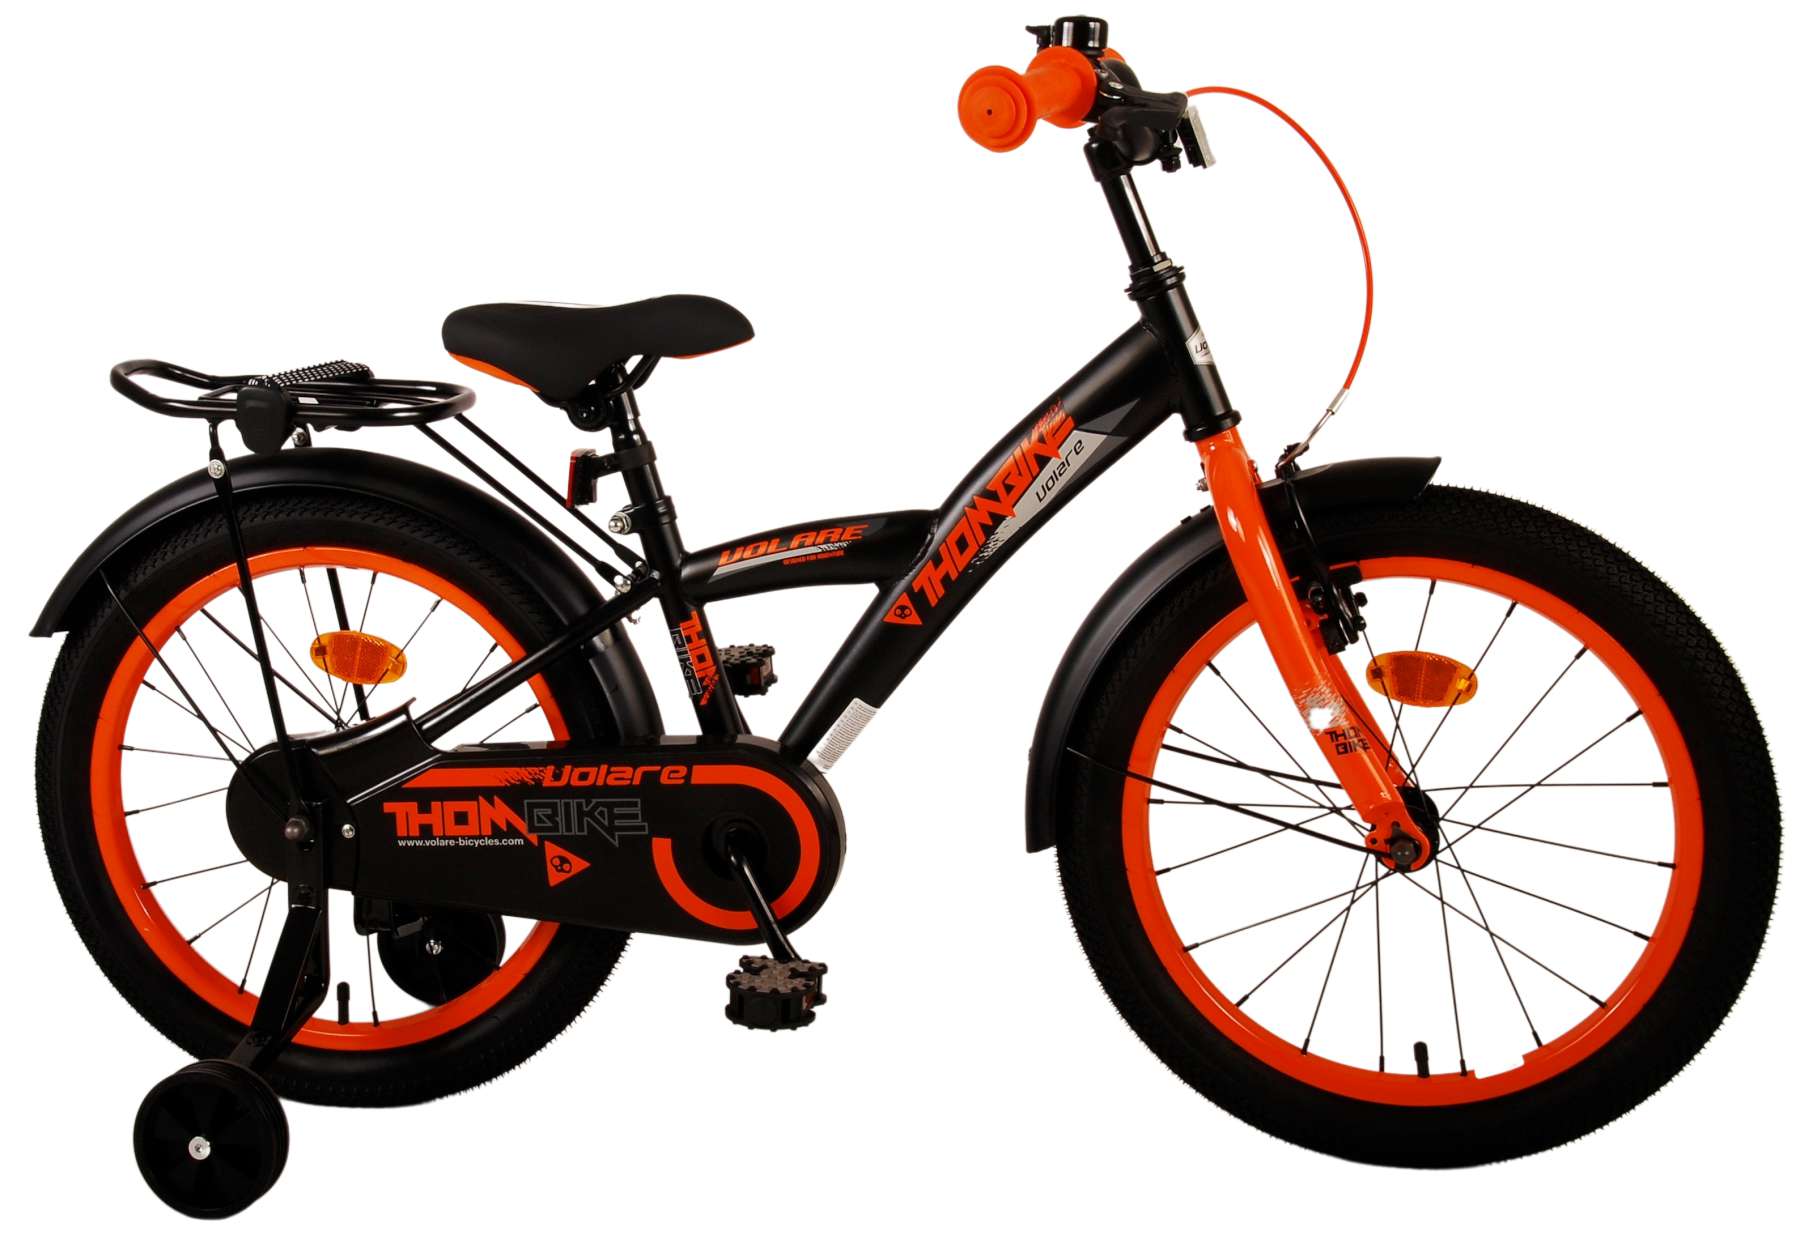 Kinderfahrrad Thombike für Jungen 18 Zoll Kinderrad in Schwarz Orange